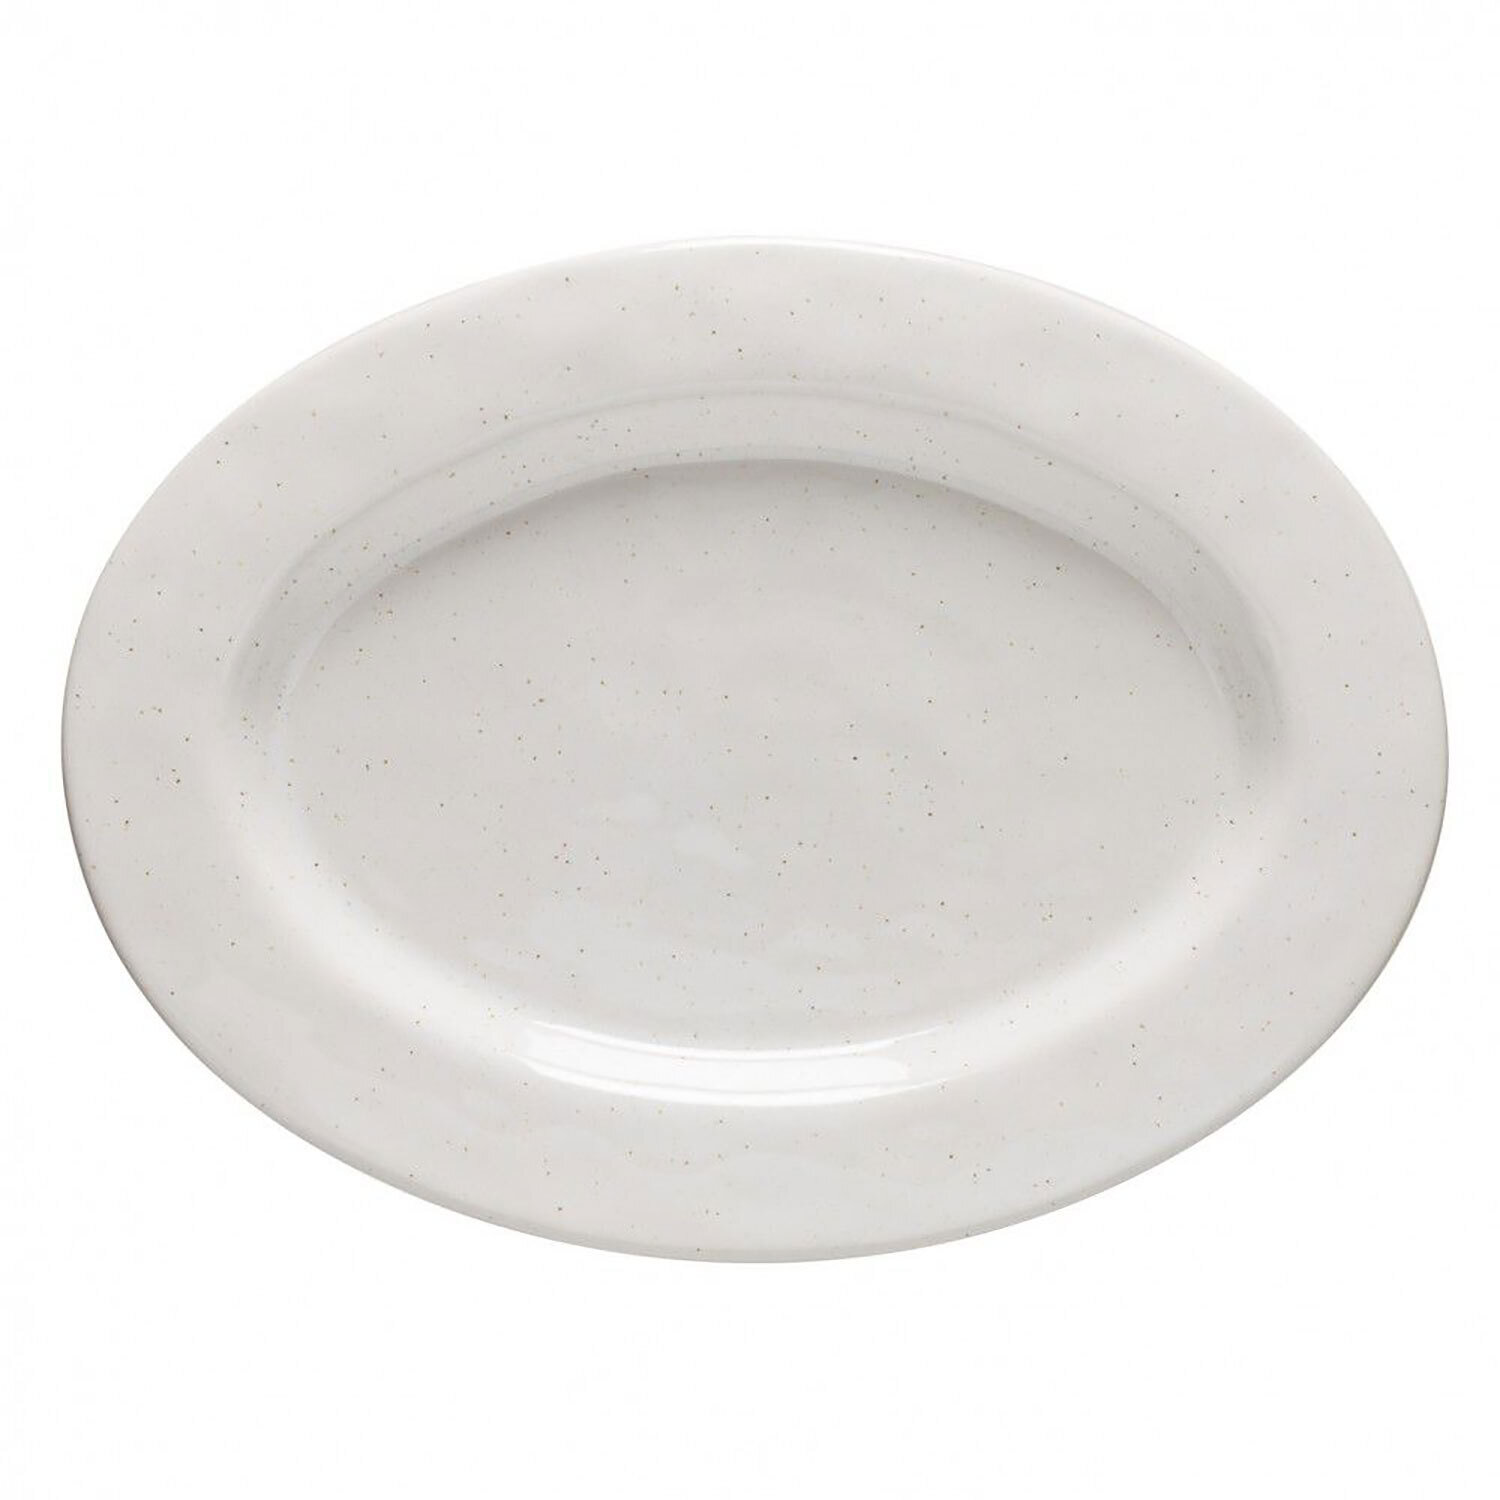 Casafina Fattoria White Oval Platter FA541-WHI